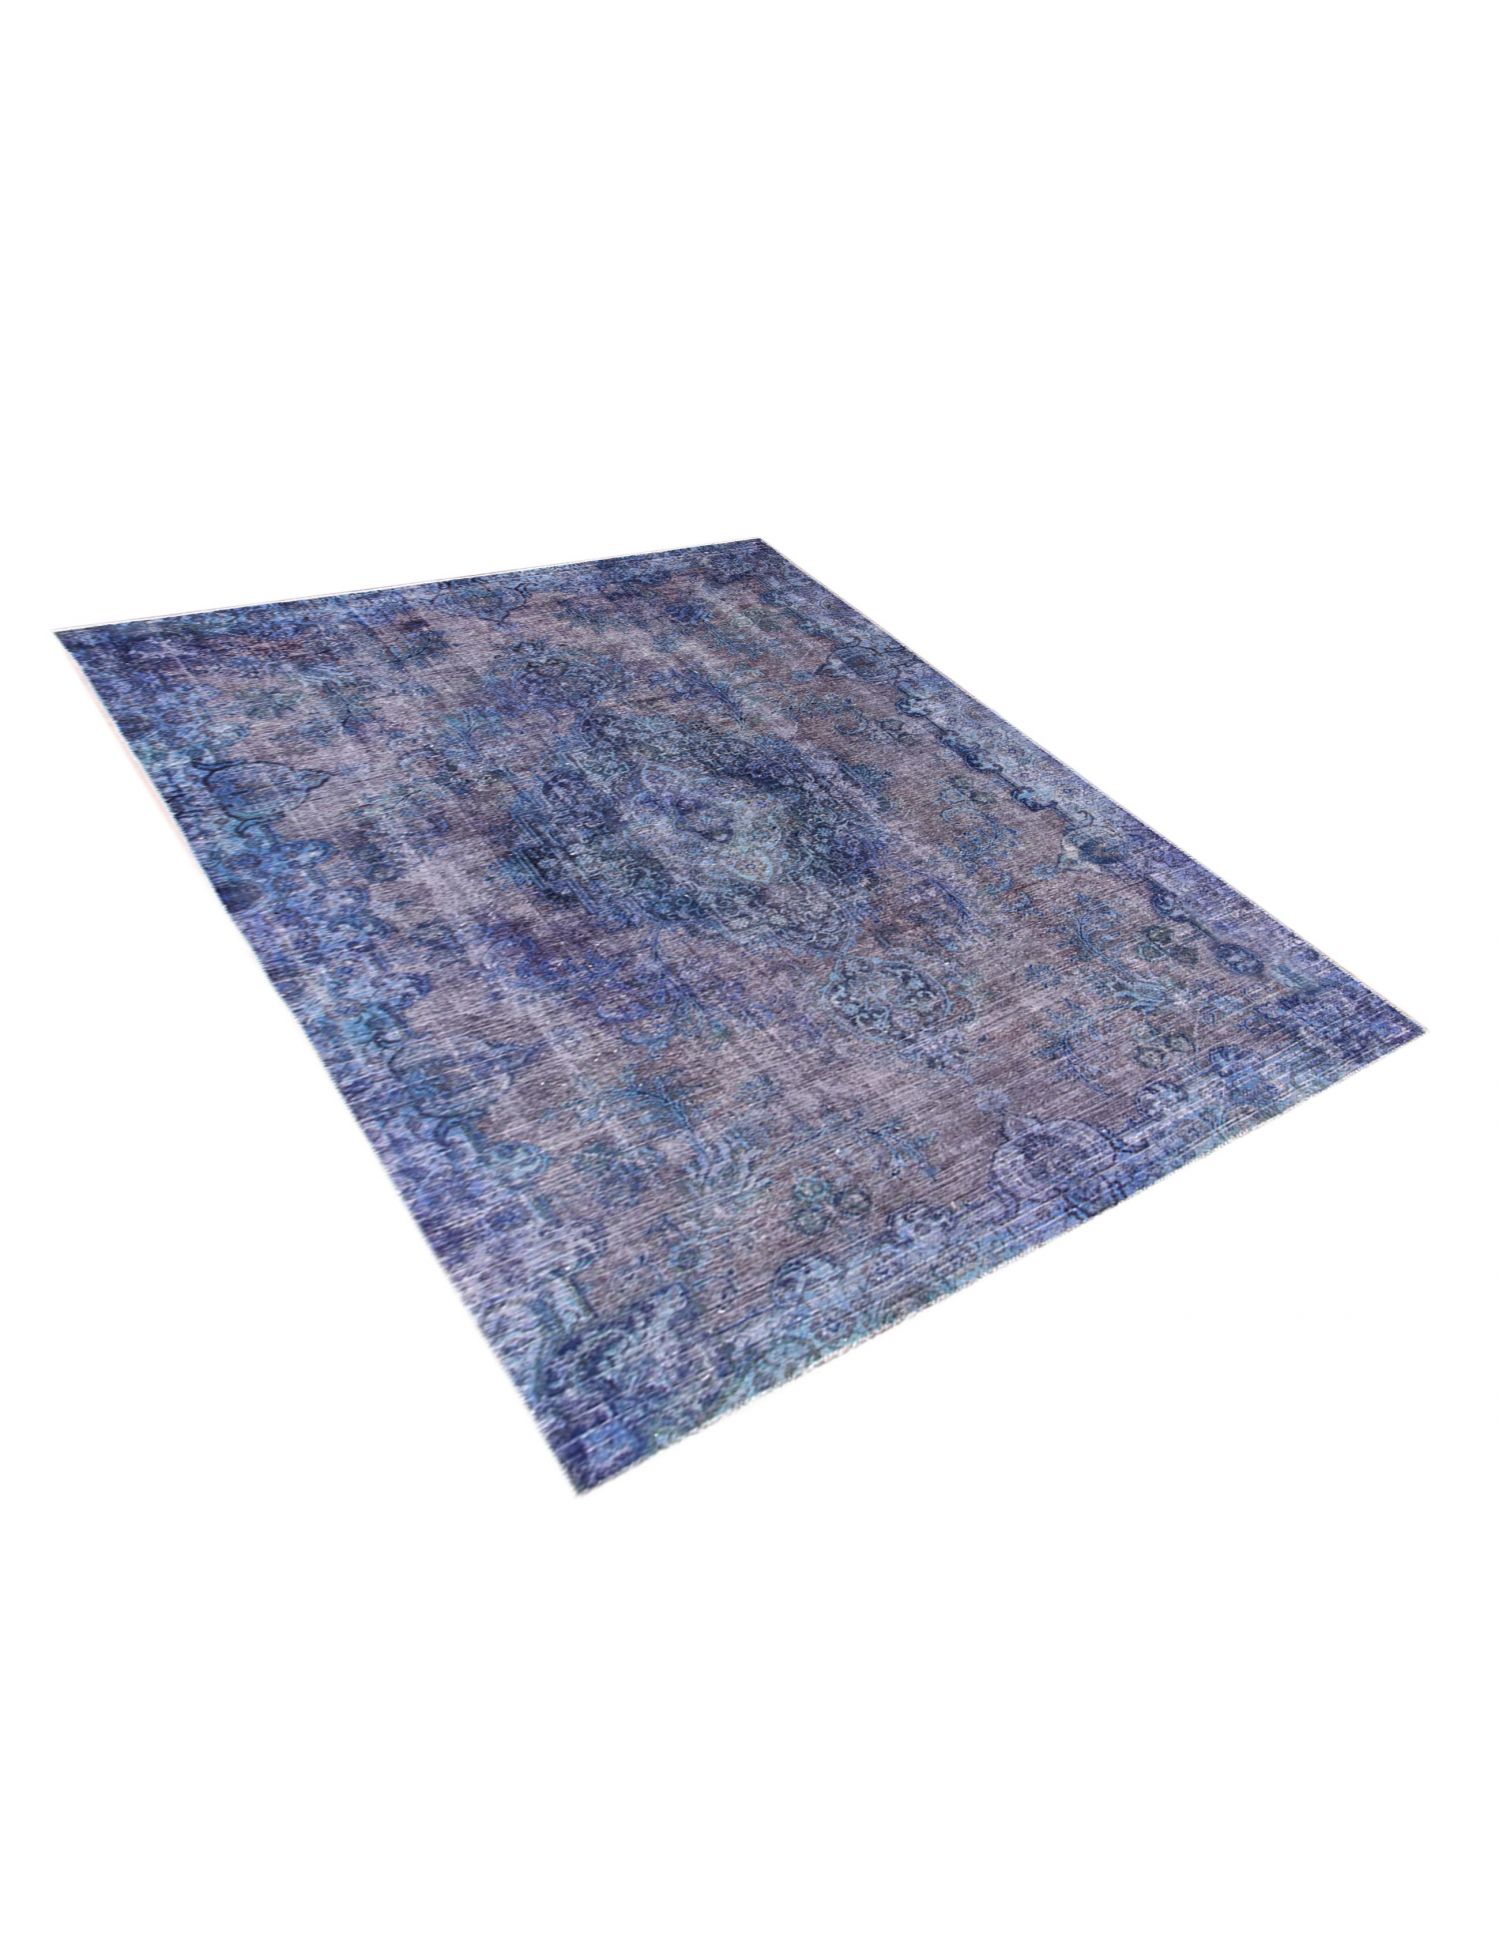 Persian Vintage Carpet  blue <br/>290 x 190 cm